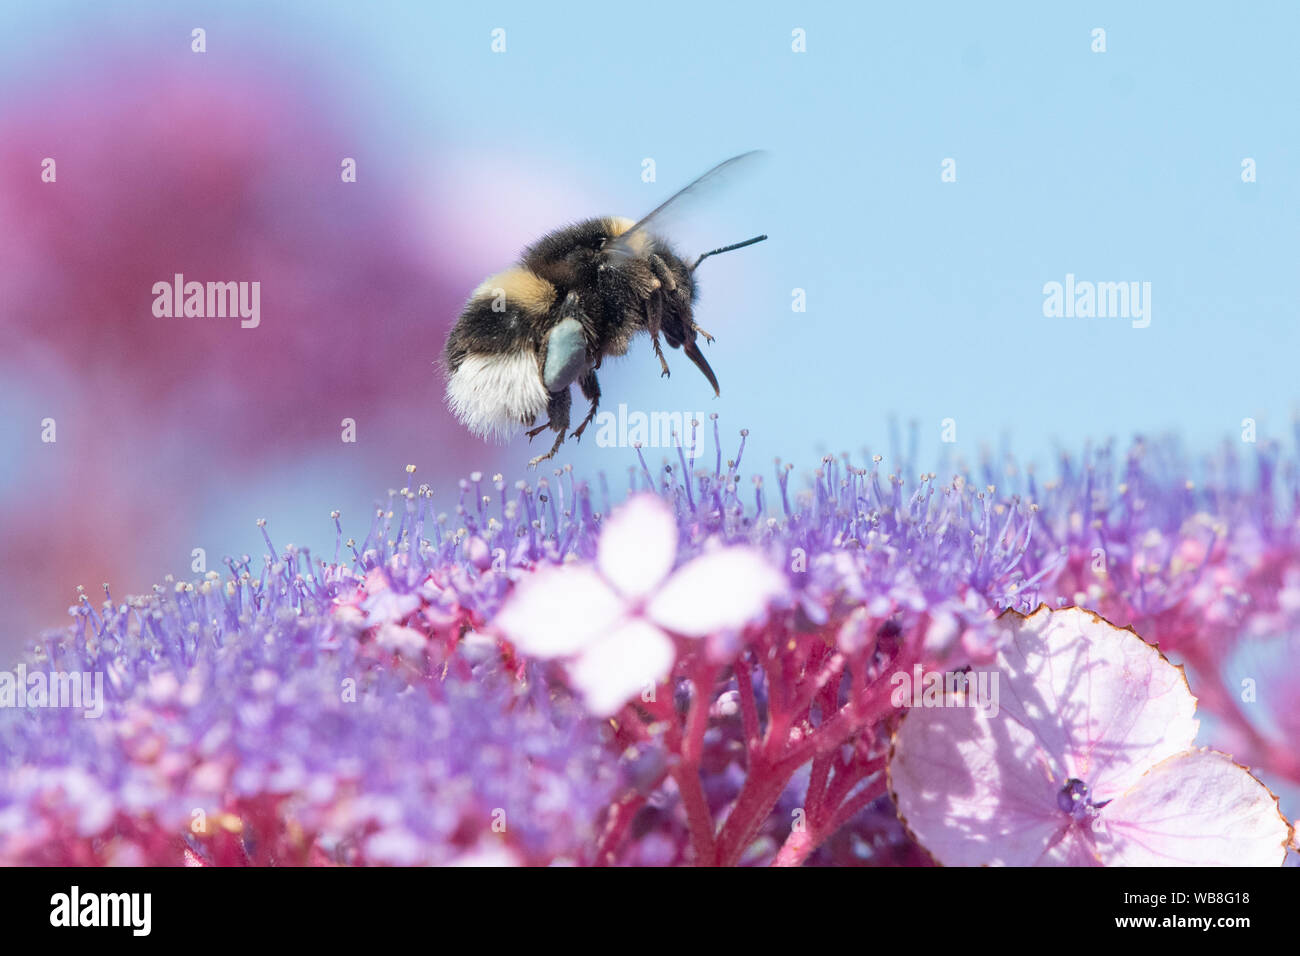 Killearn, Stirlingshire, Scotland, UK. Août 25, 2019. Royaume-uni - un bourdon avec corbeilles à pollen bleu Hortensia sur fourrages fleurs sous un ciel bleu à la hausse des températures dans un jardin Stirlingshire. Couleur du pollen varie selon l'espèce de plante dont le pollen d'abeilles et peut varier du blanc au bleu foncé. Credit : Kay Roxby/Alamy Live News Banque D'Images